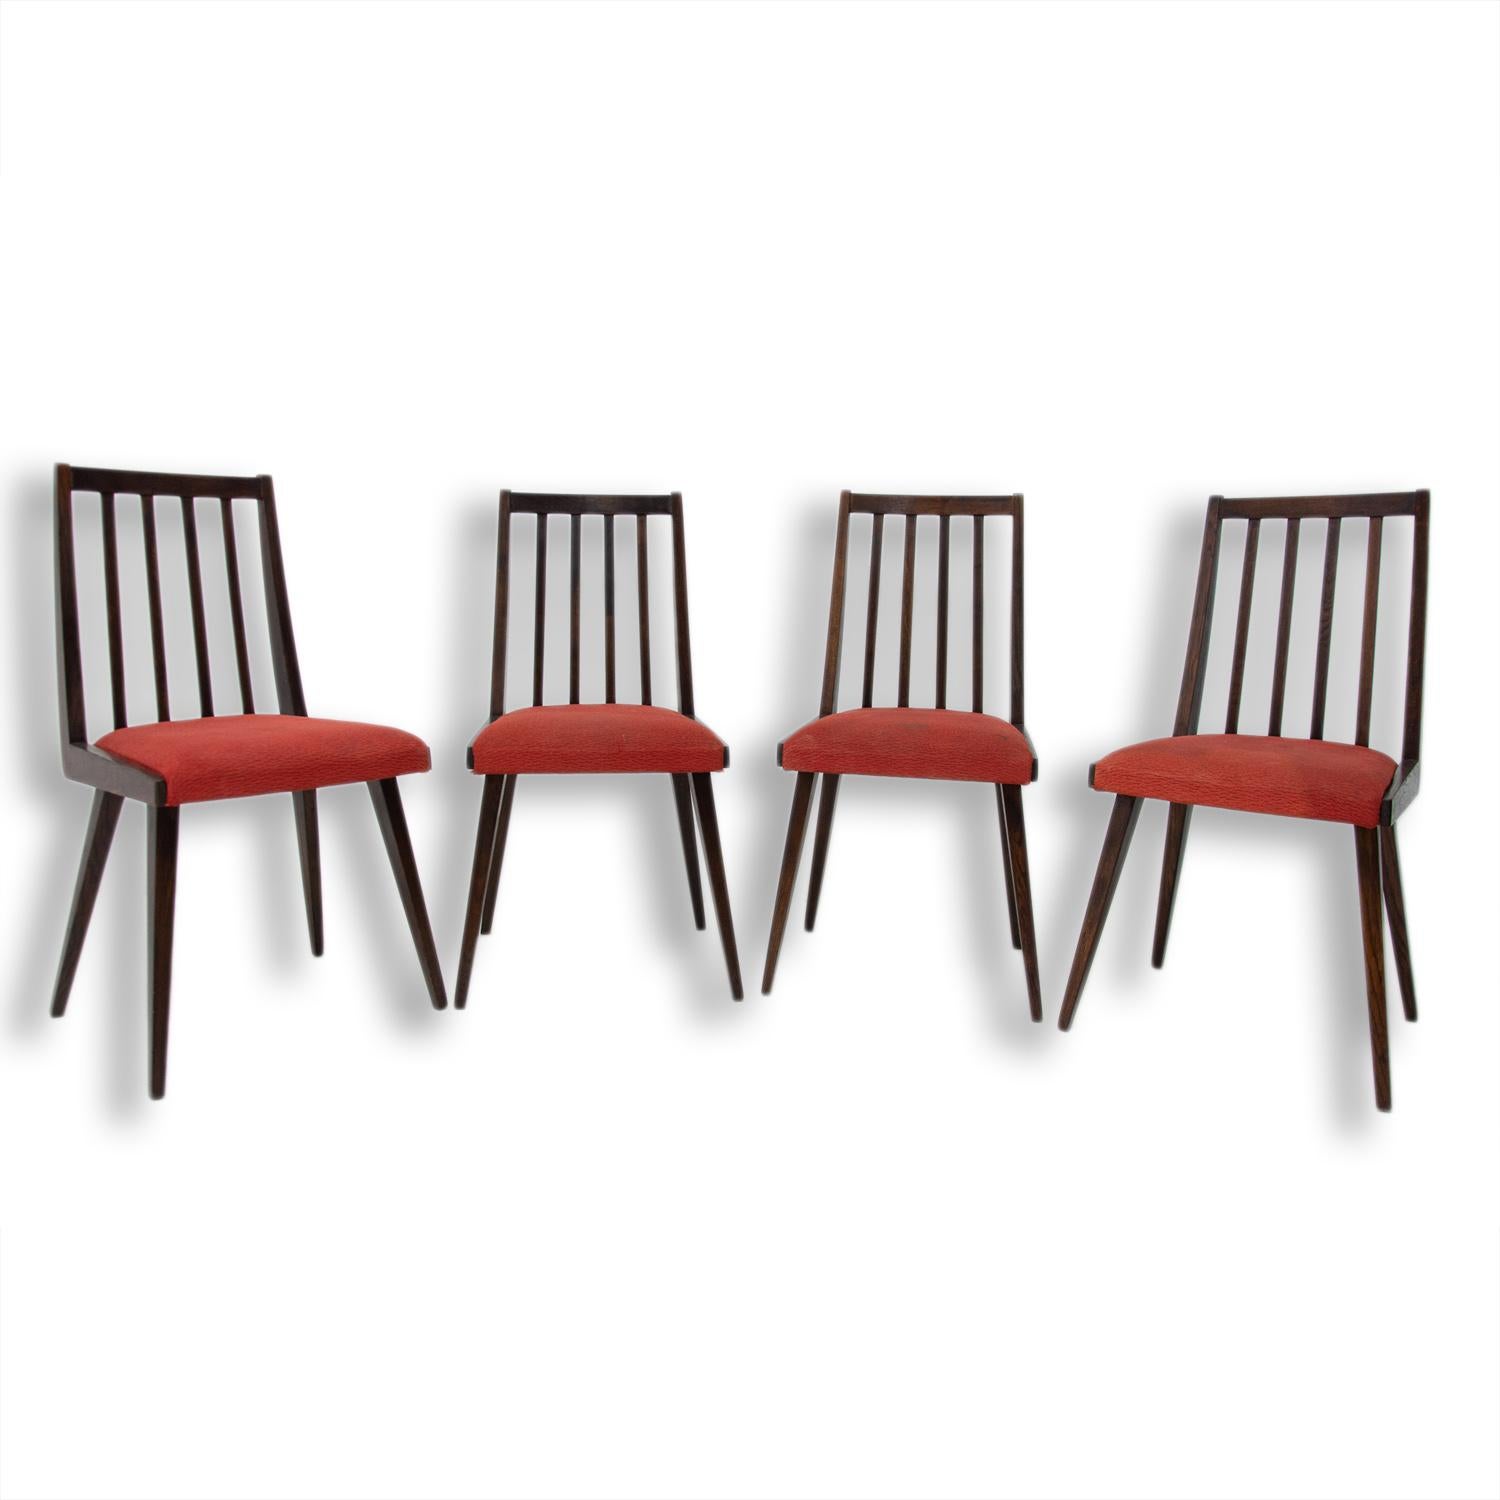 Ces chaises de salle à manger ont été conçues par Jirí Jiroutek pour Interiér Praha et font partie de l'ensemble de salon U-550. Ils ont été fabriqués dans l'ancienne Tchécoslovaquie dans les années 1960. La structure est en bois de hêtre et les